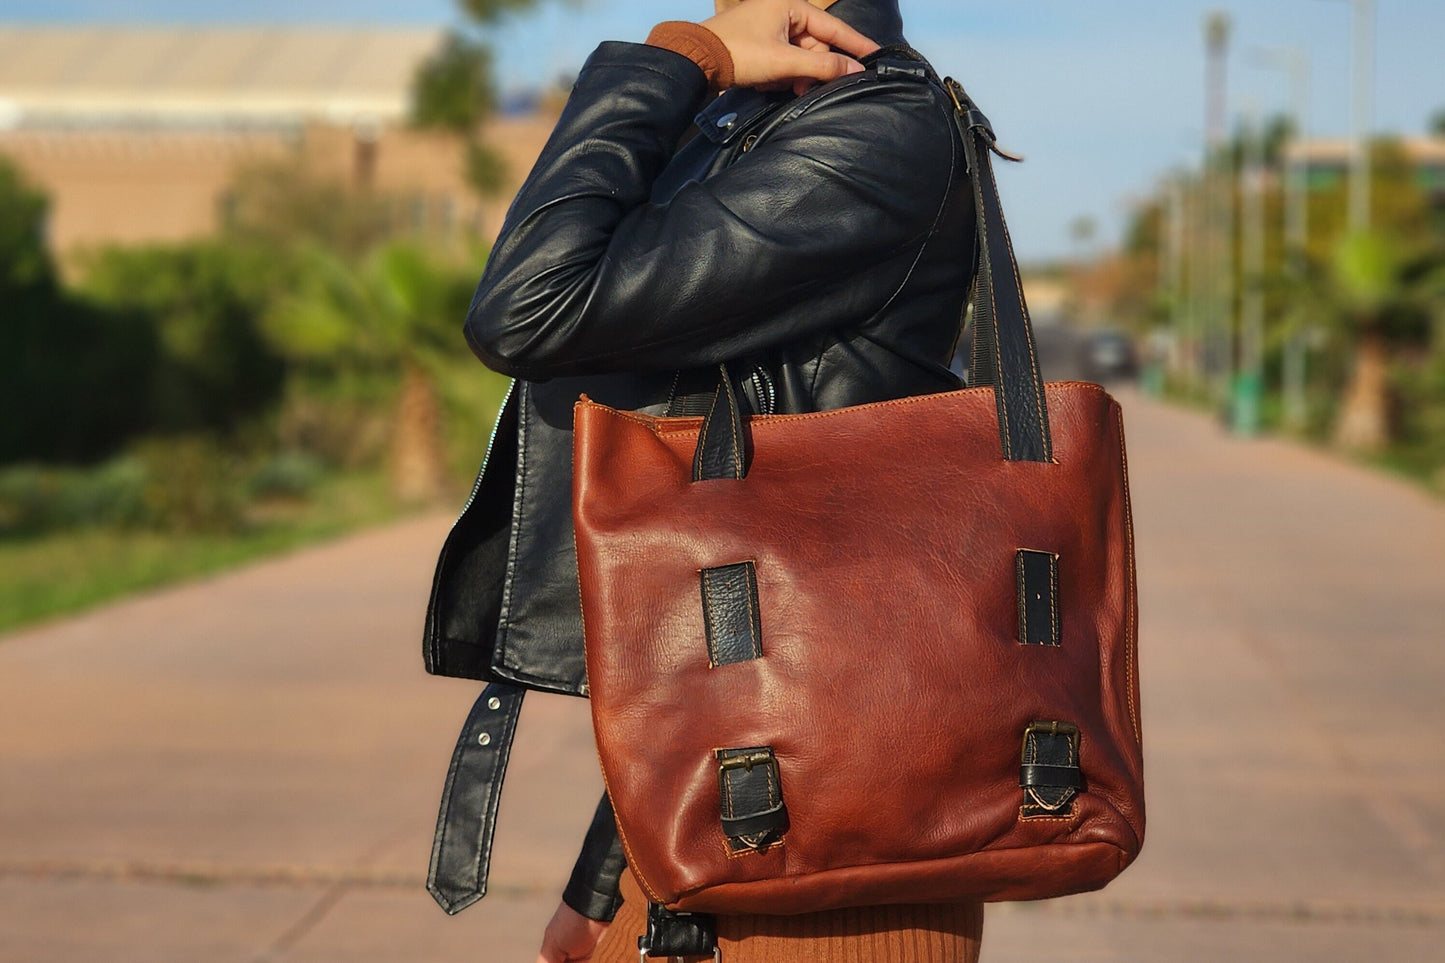 Chic Leather Shoulder Tote Bag with Elegant Black Handles